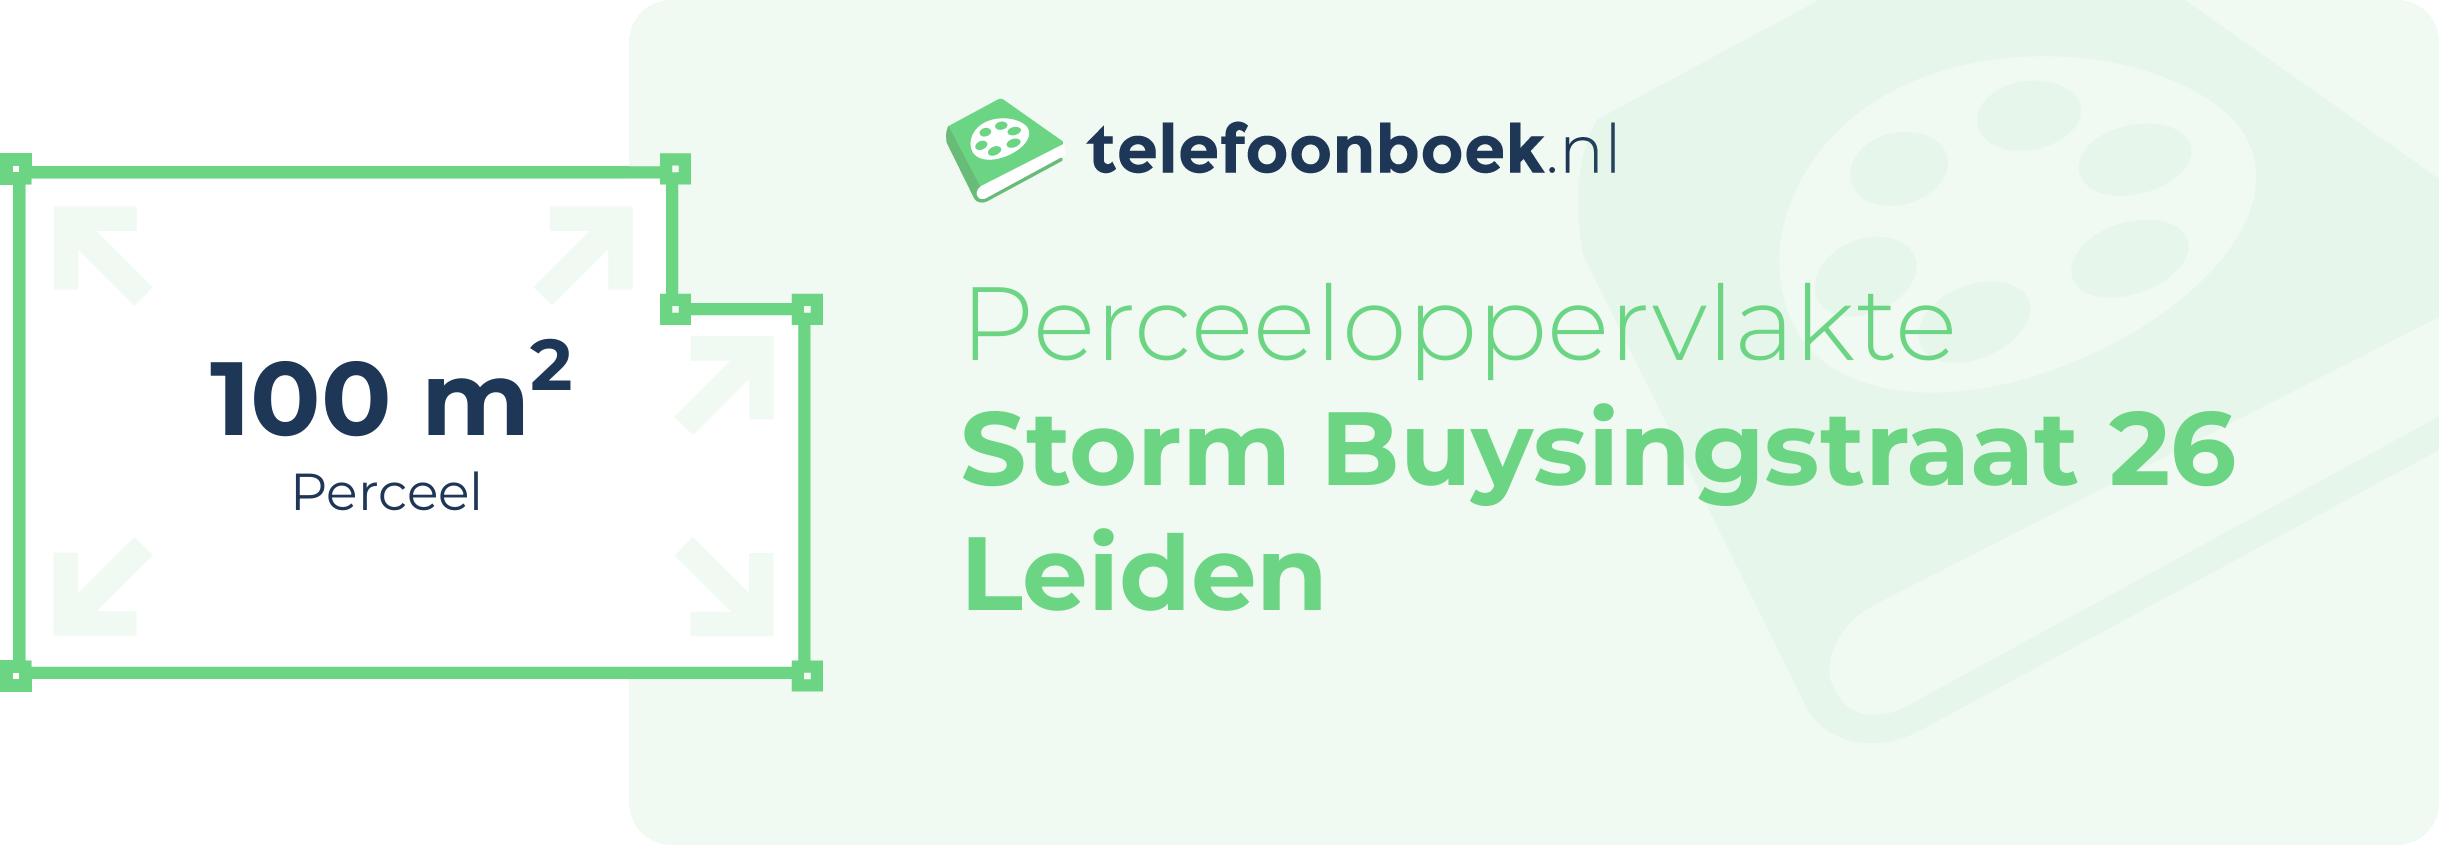 Perceeloppervlakte Storm Buysingstraat 26 Leiden